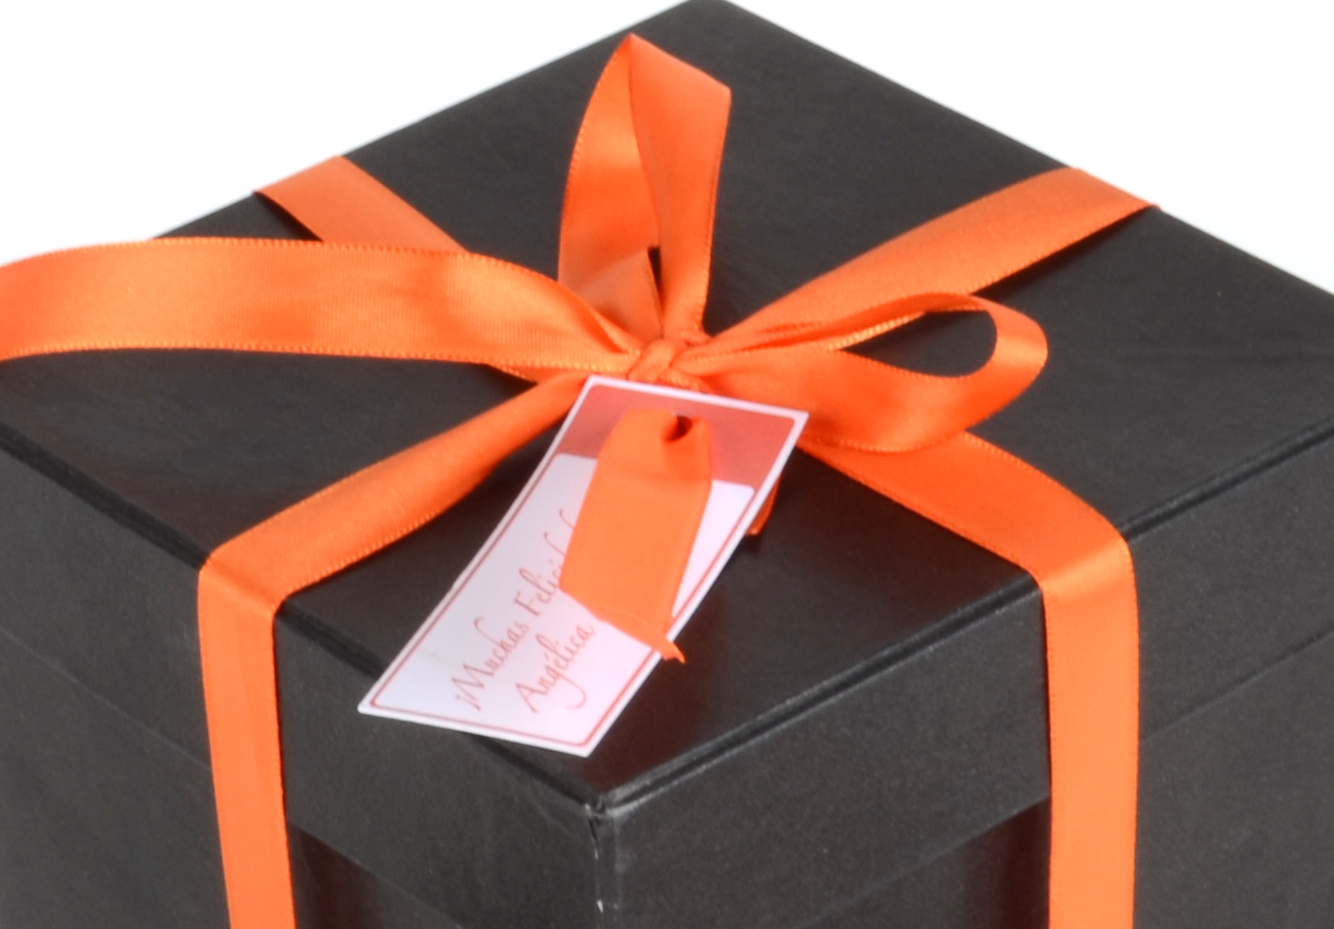 Detalle Cierre Moño Gift Box